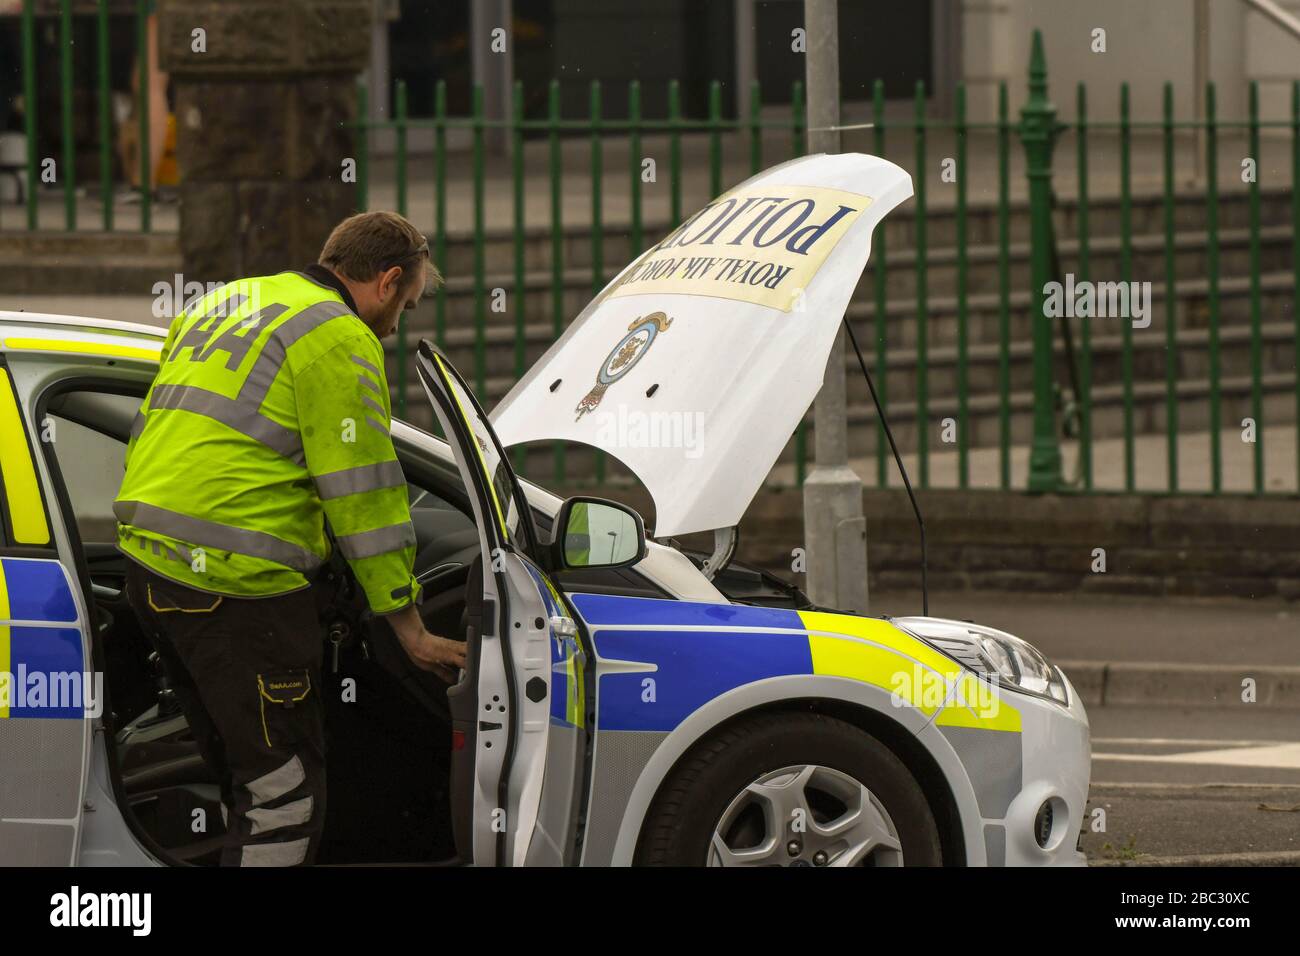 SWANSEA, GALLES - LUGLIO 2018: Meccanico dell'AA che partecipa a una vettura di pattuglia di polizia RAF rotta a Swansea, Galles. Foto Stock